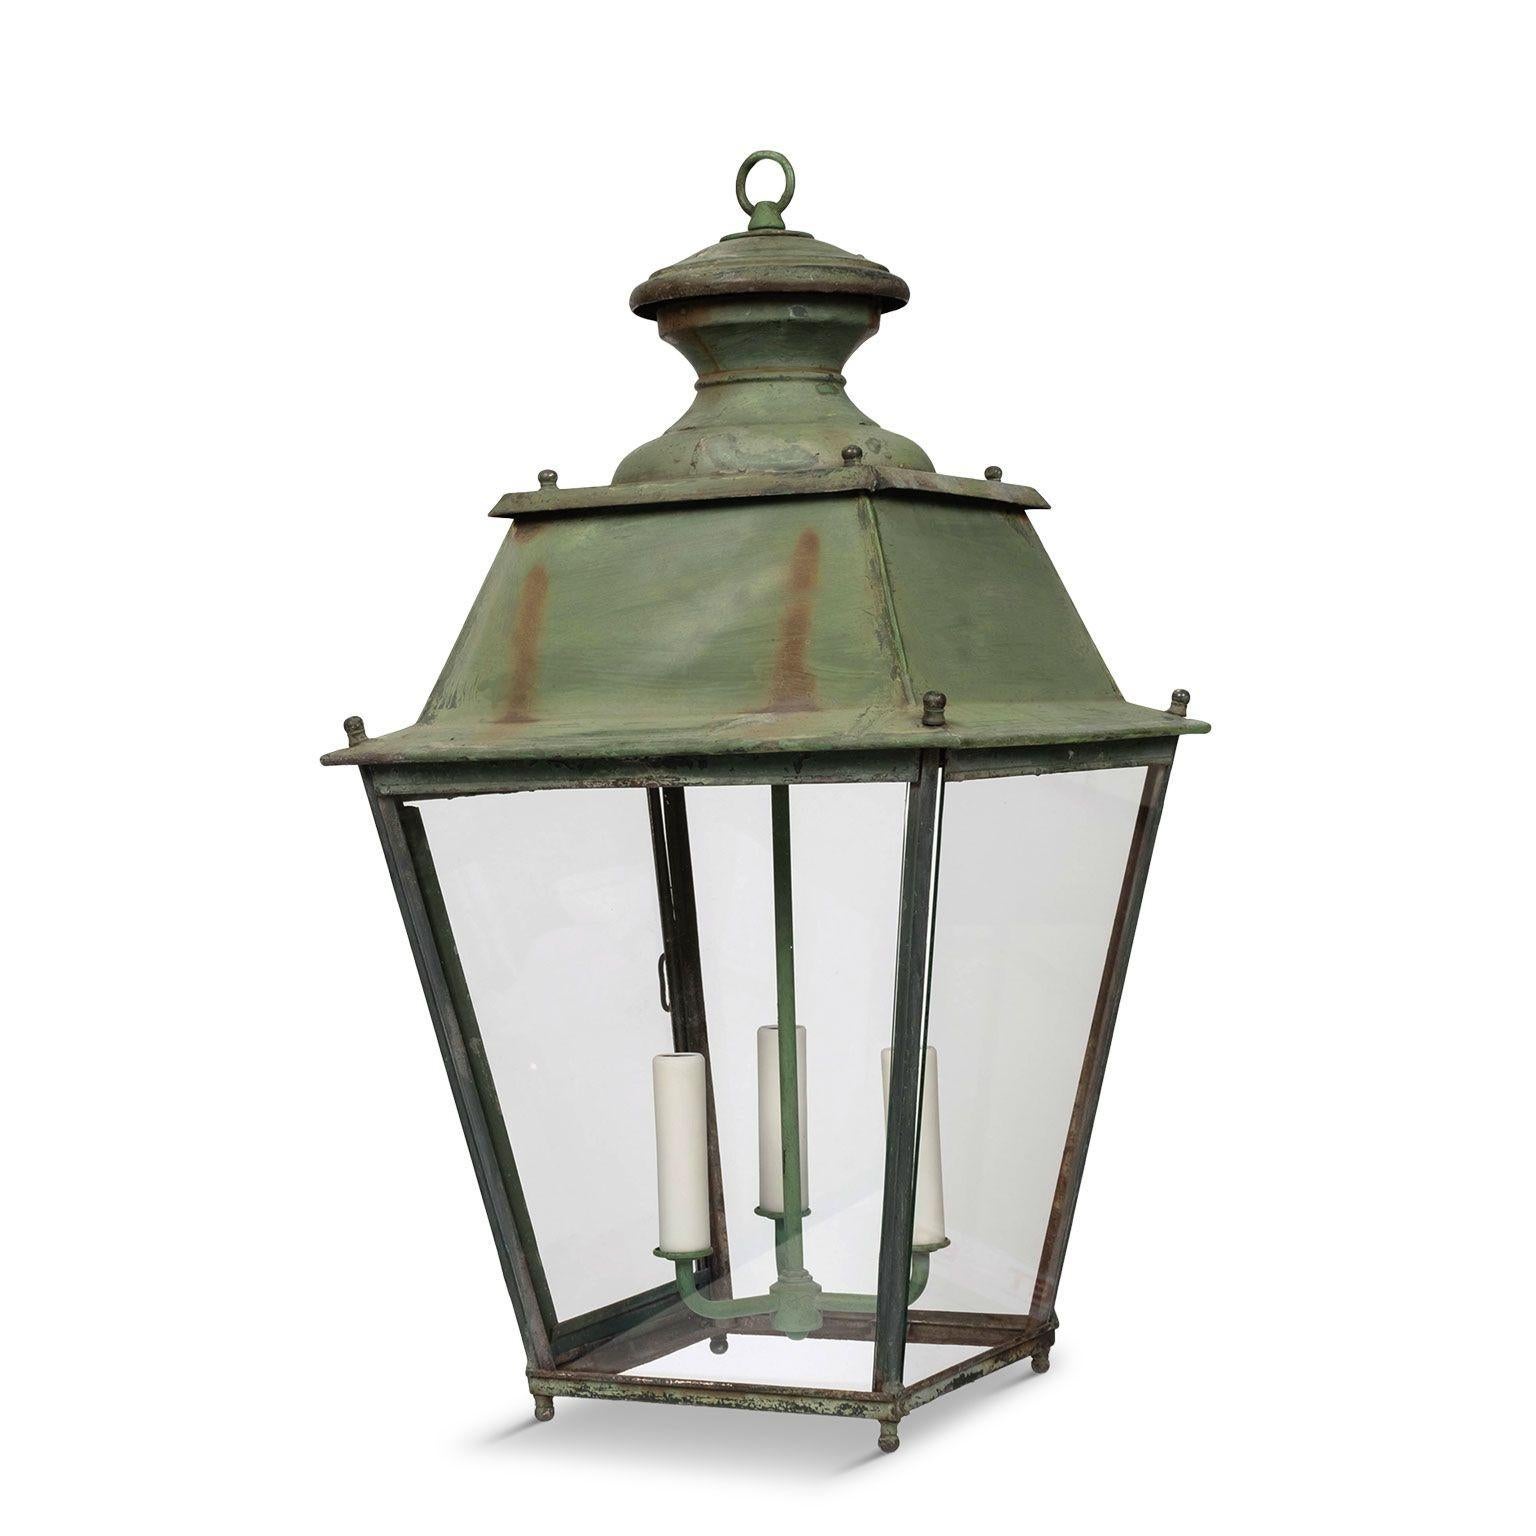 Lanterne en fer à panneaux de verre peints en vert, vers 1900-1930. Nouvellement câblé avec une grappe de trois lampes candélabres. Comprend une chaîne et un baldaquin (les mesures indiquées ne comprennent pas la chaîne).